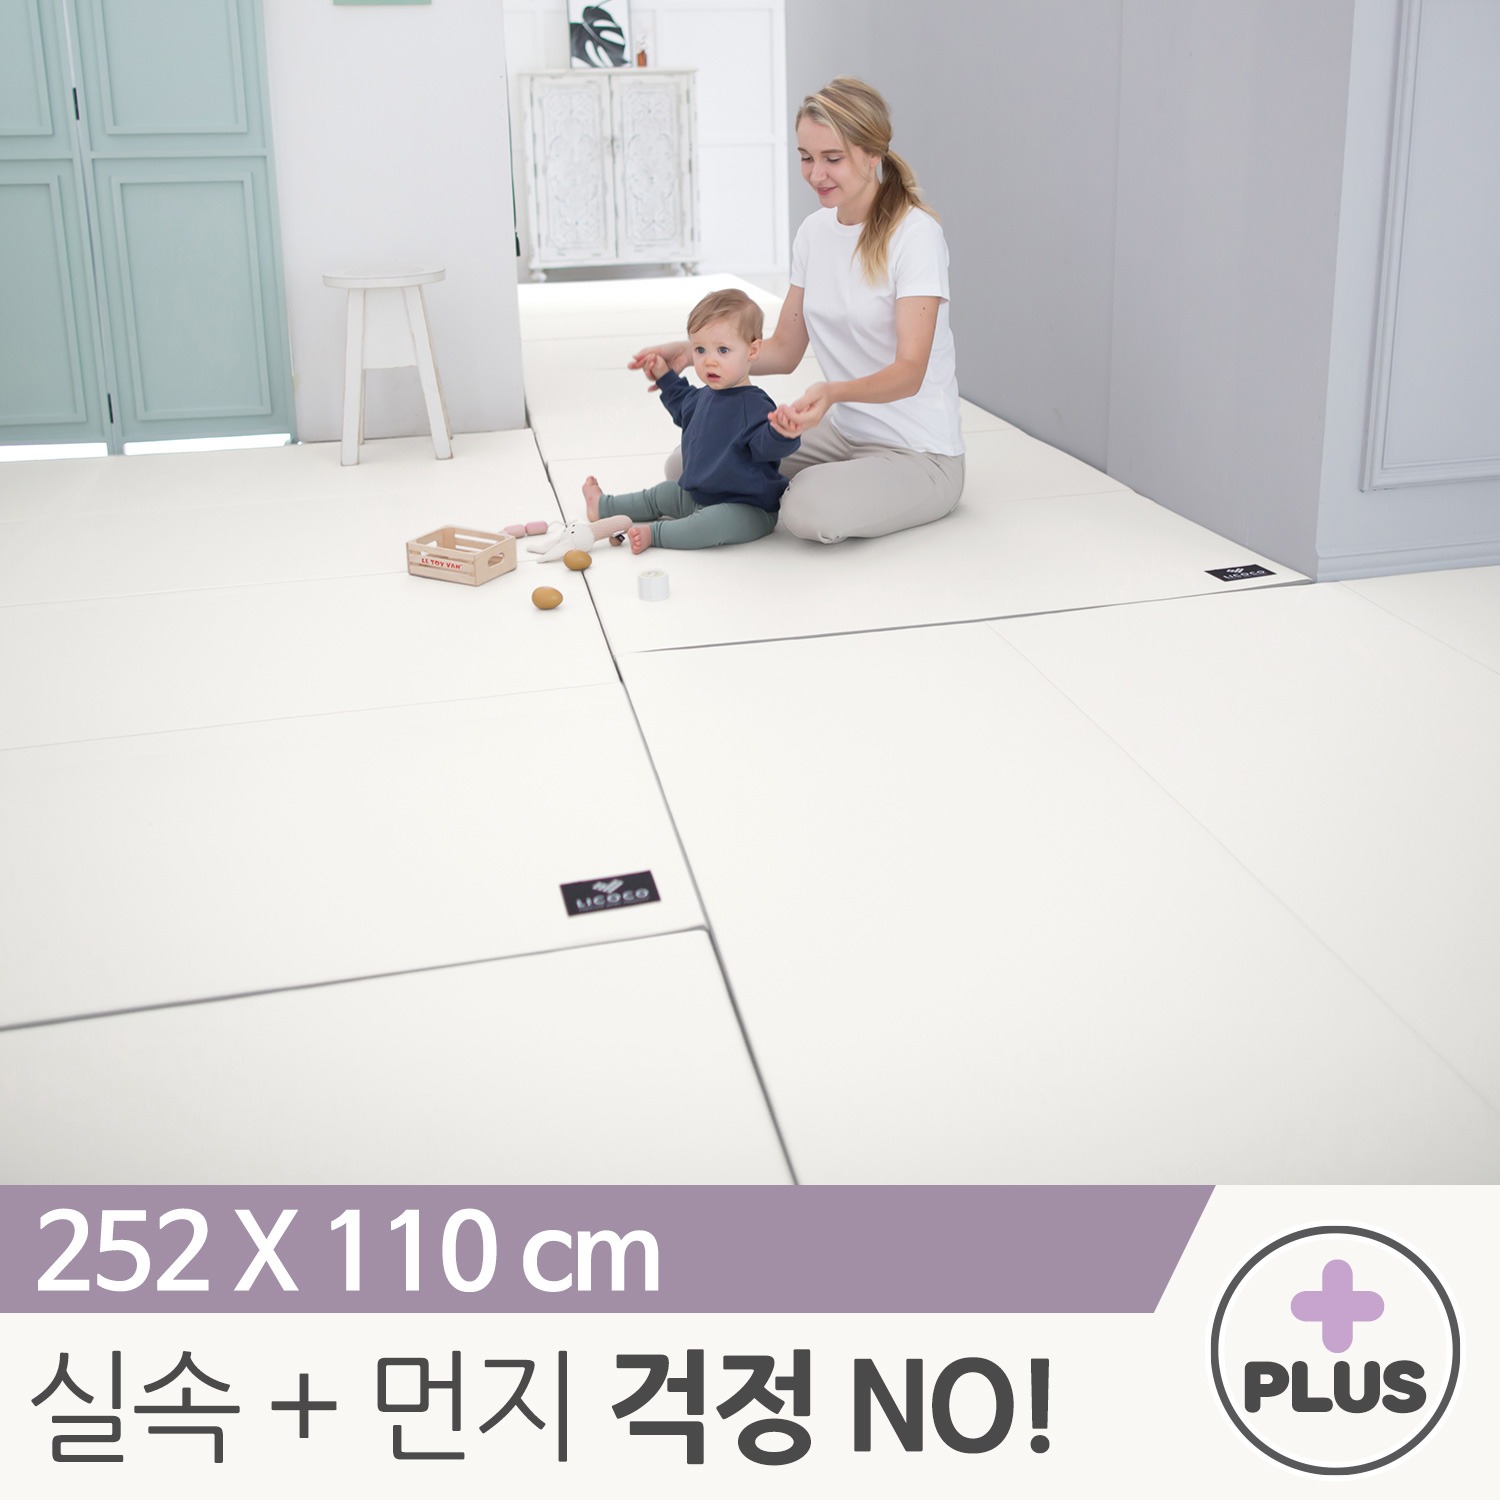 [리코코] NEW 클린롤매트 Plus 252x110cm 아이보리 / 거실 복도 놀이방 층간소음 아기 매트